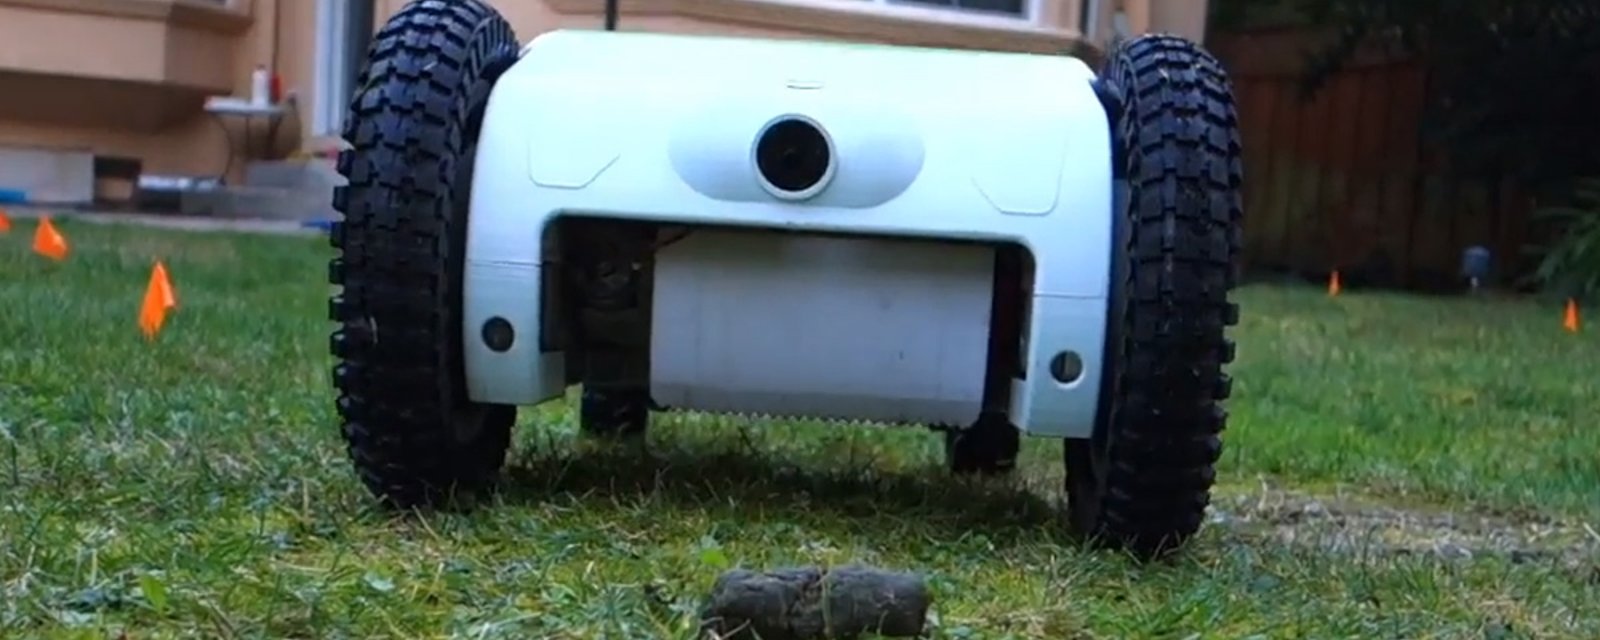 Une invention qui pourrait plaire aux propriétaires de chiens: un robot qui trouve et ramasse automatiquement les crottes!